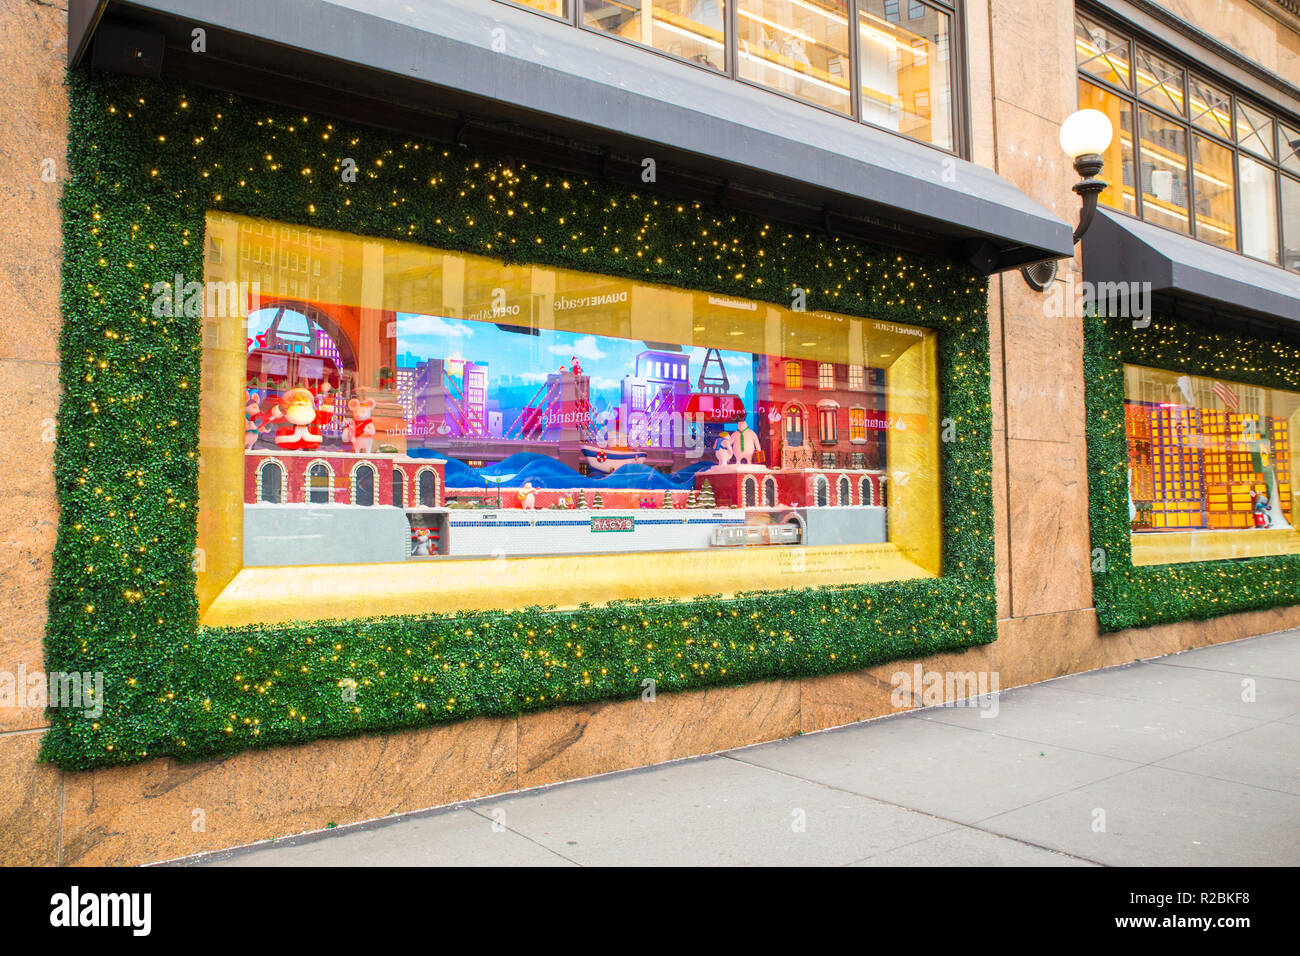 NEW YORK CITY - 17 décembre 2017 : Avis de Macy's Department Store à Herald Square à Manhattan, avec maison de vacances fenêtre affiche Banque D'Images